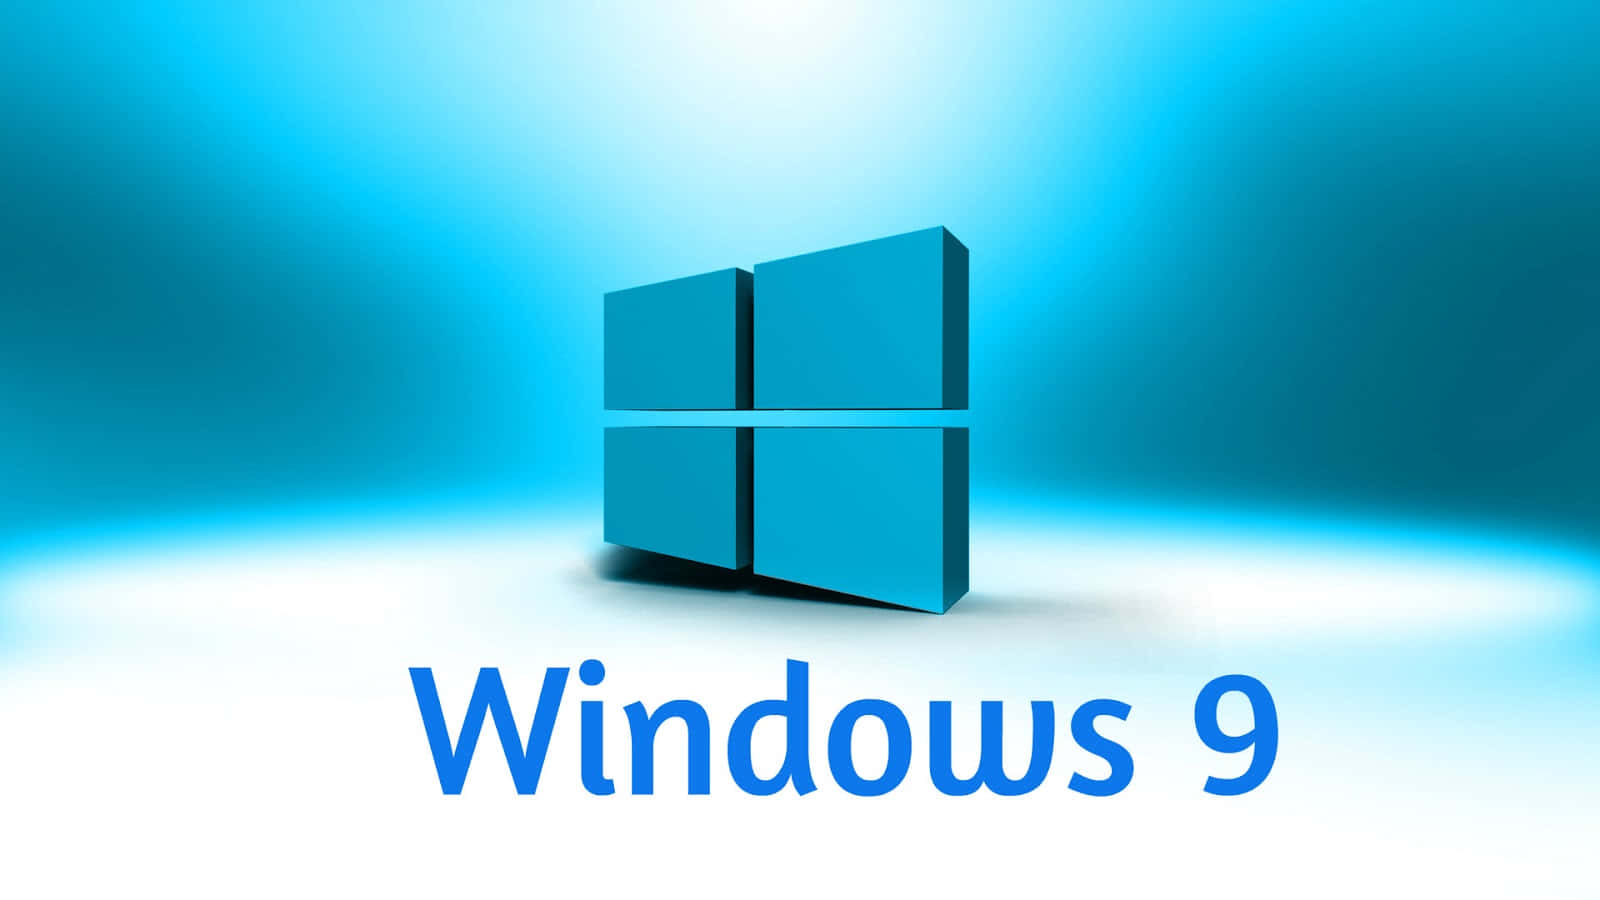 Oque O Windows 10 Oferece A Você?